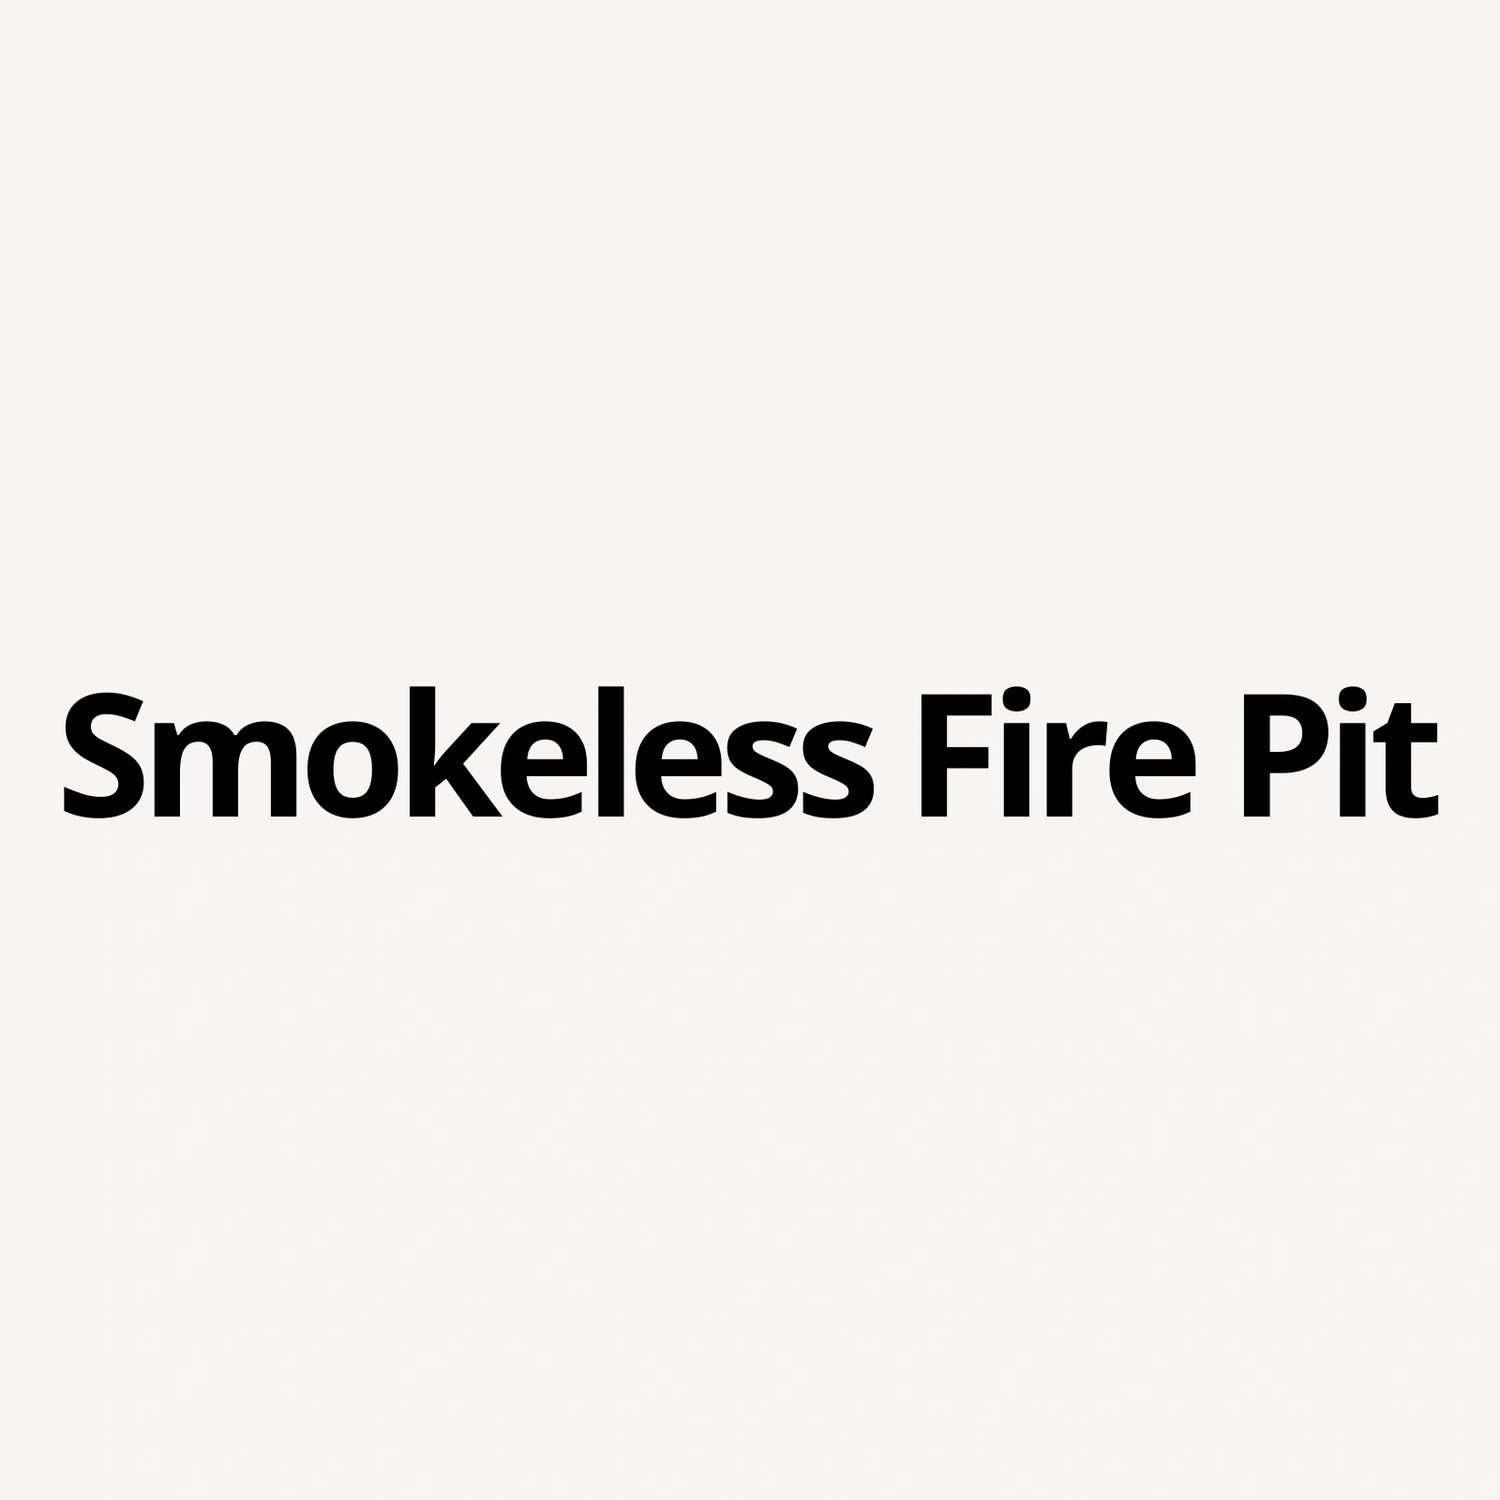 Smokeless Fire Pit